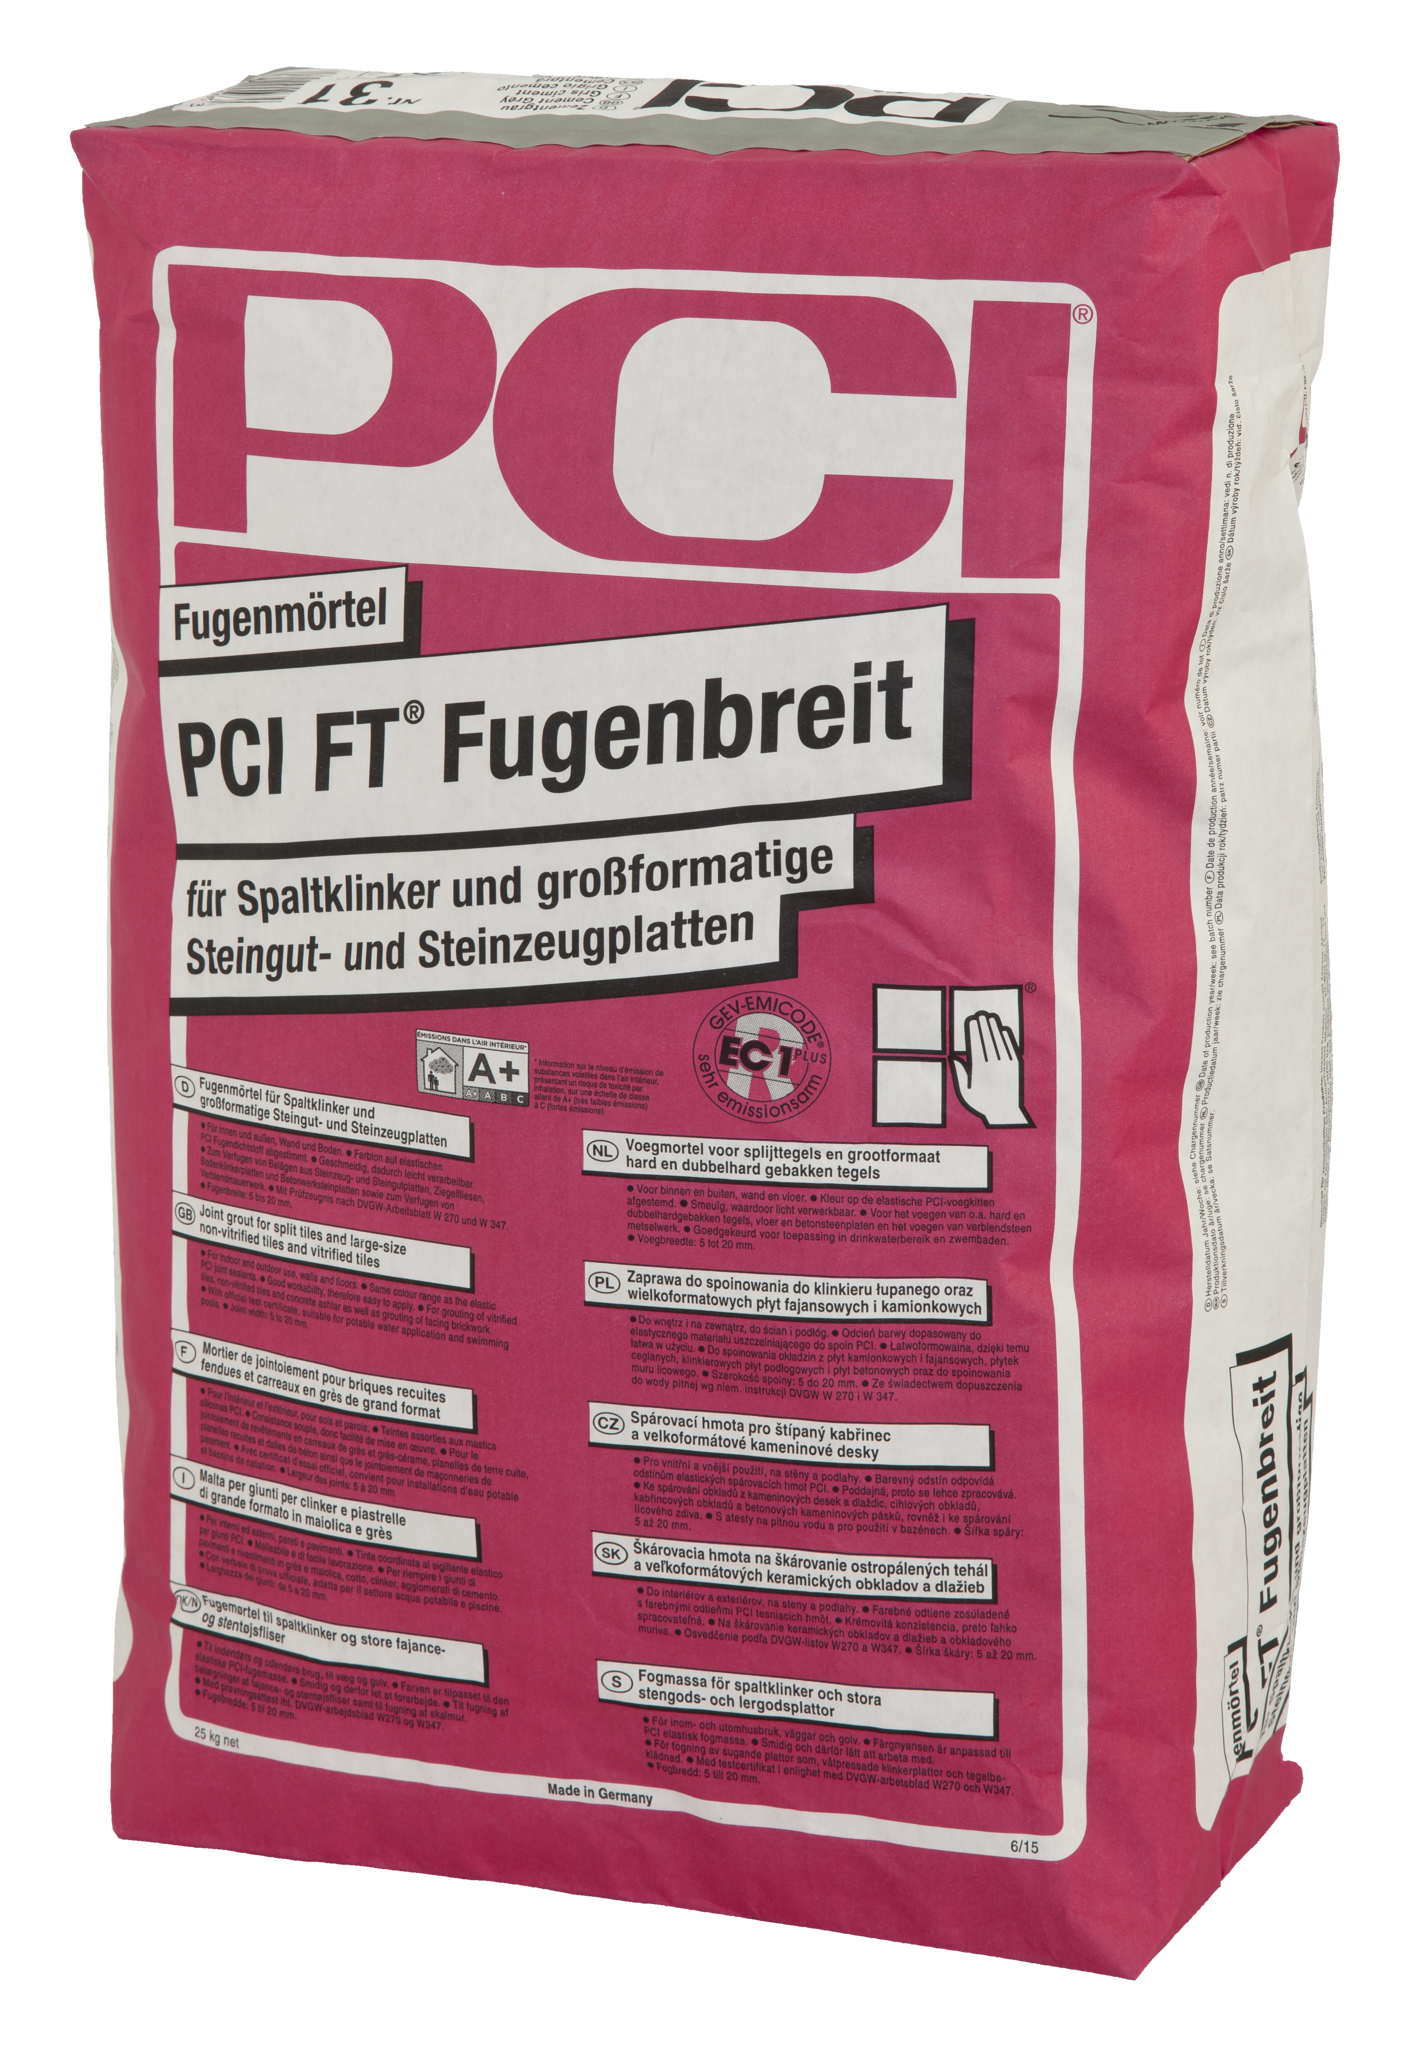 ZL OST PCI FT-Fugenbreit anthrazit Nr.47 25kg Fugenmörtel